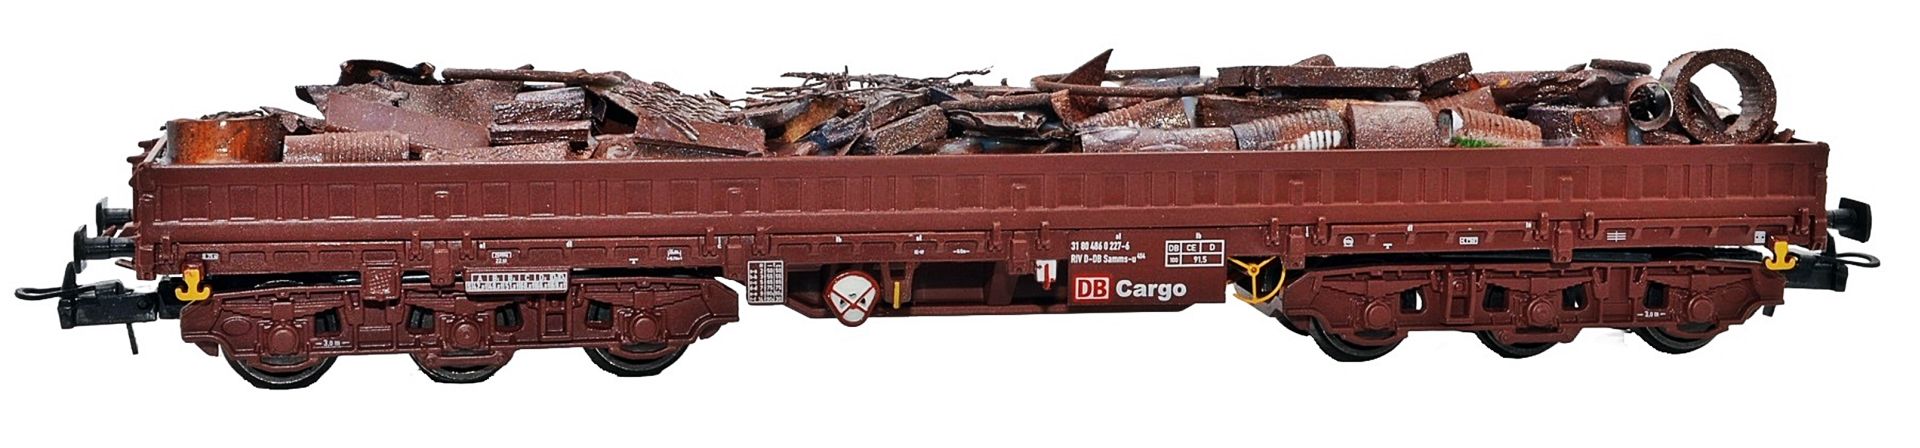 NPE NW 22950 - Schwerlastwagen Samms-u 454, DB-Cargo, Ep.V, mit Schrottladung